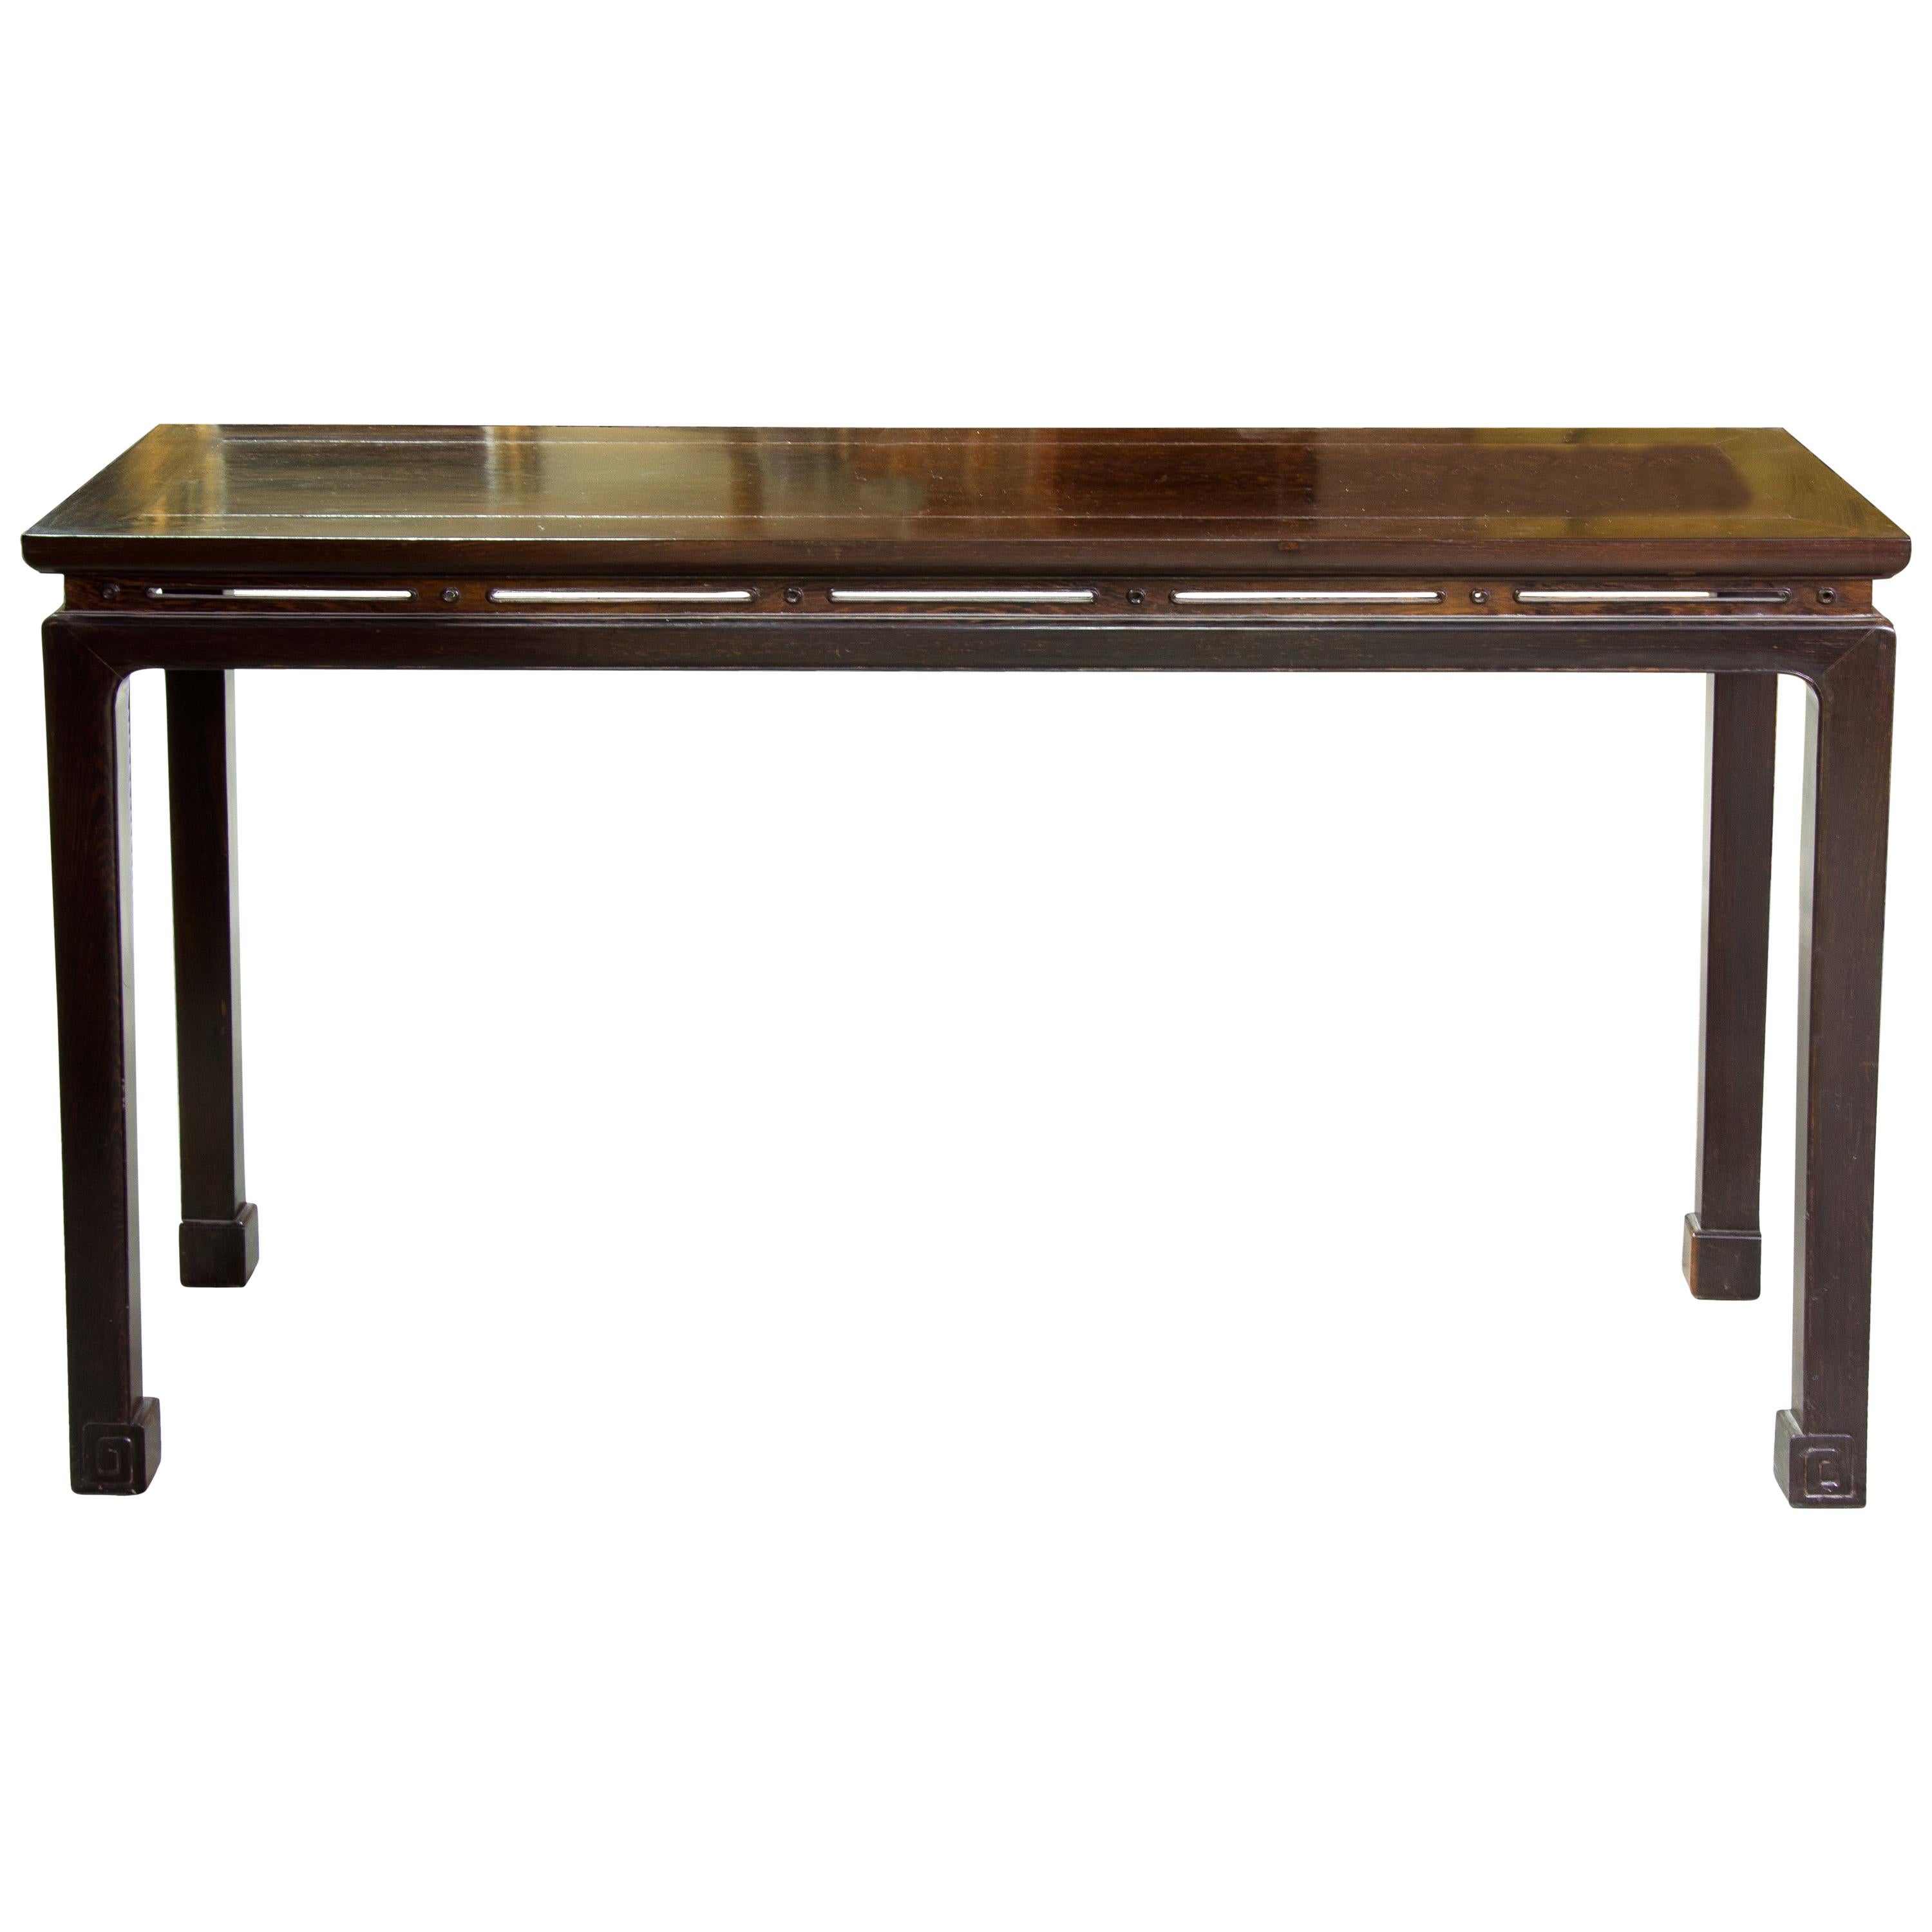 Oriental Table, Lignum Vitae, 20th Century